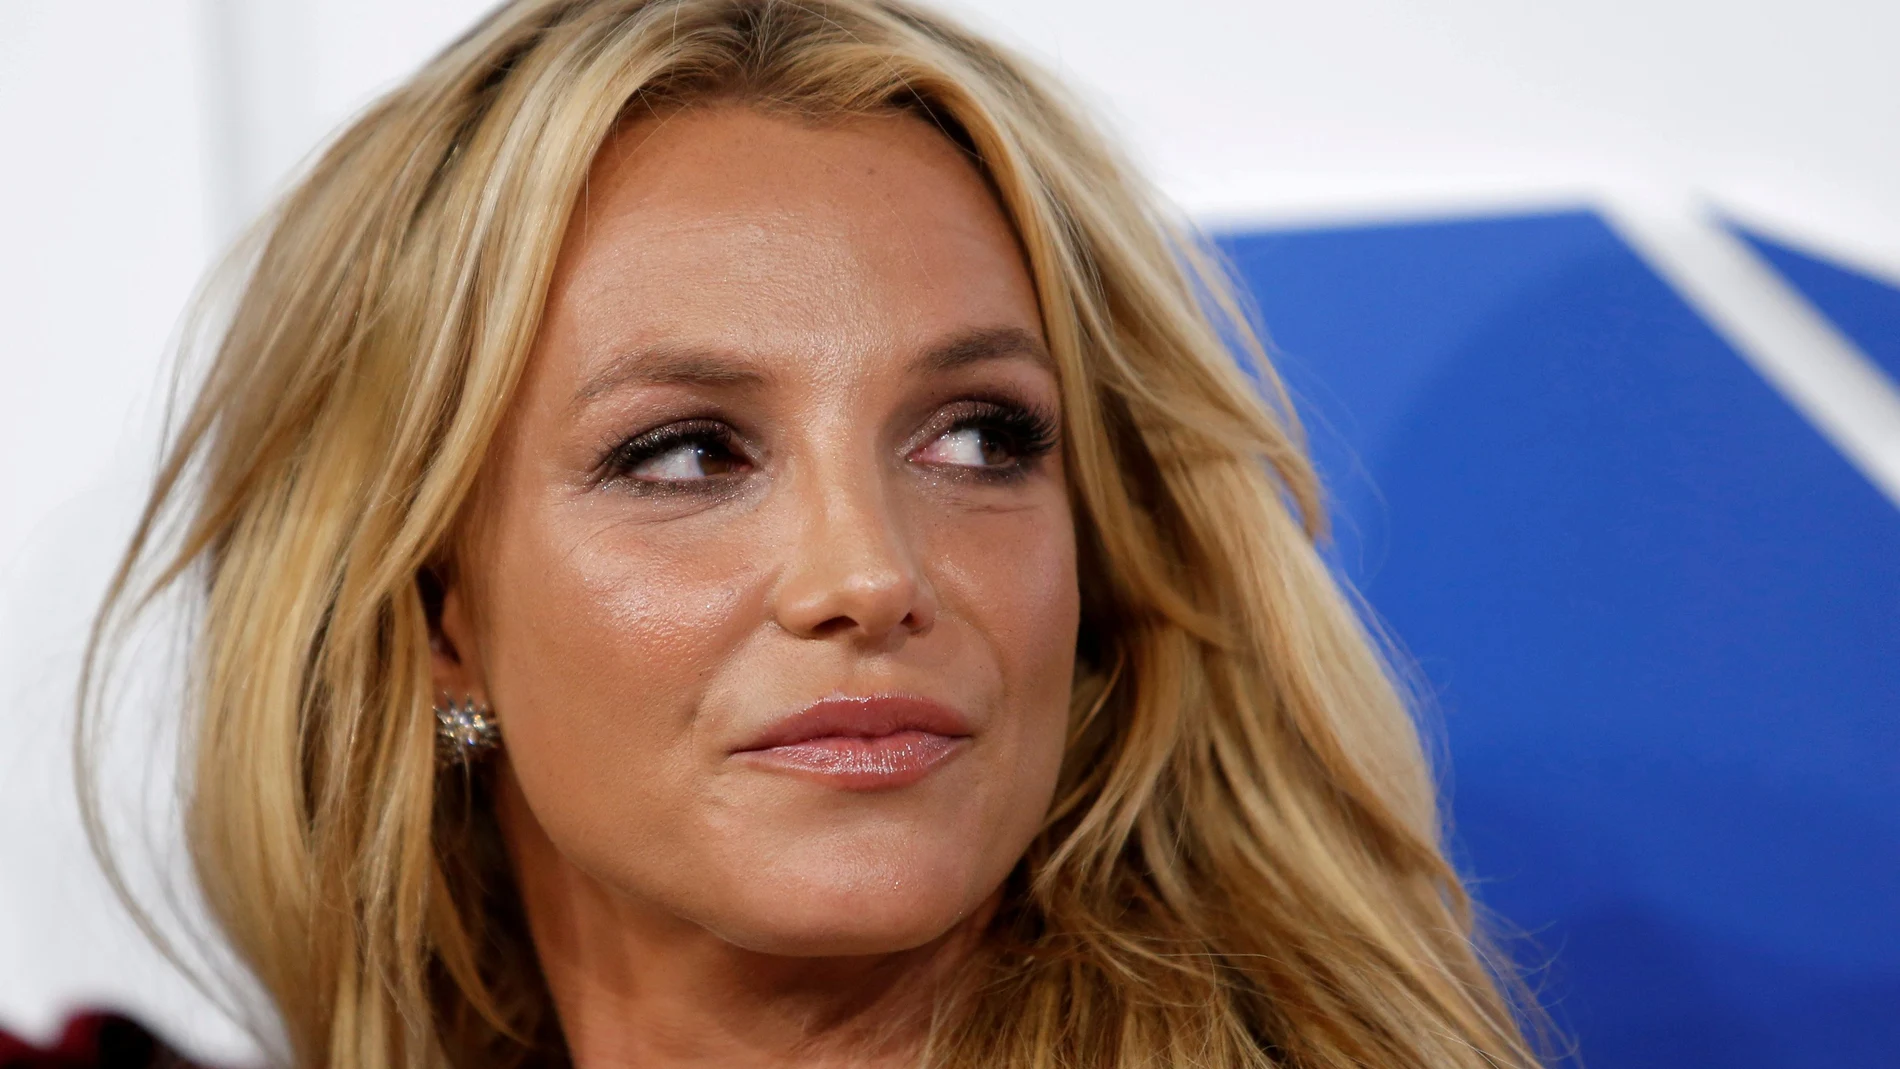 Britney Spears, en una imagen de 2016, acaba de pedir al juez que le devuelva el control de su vida